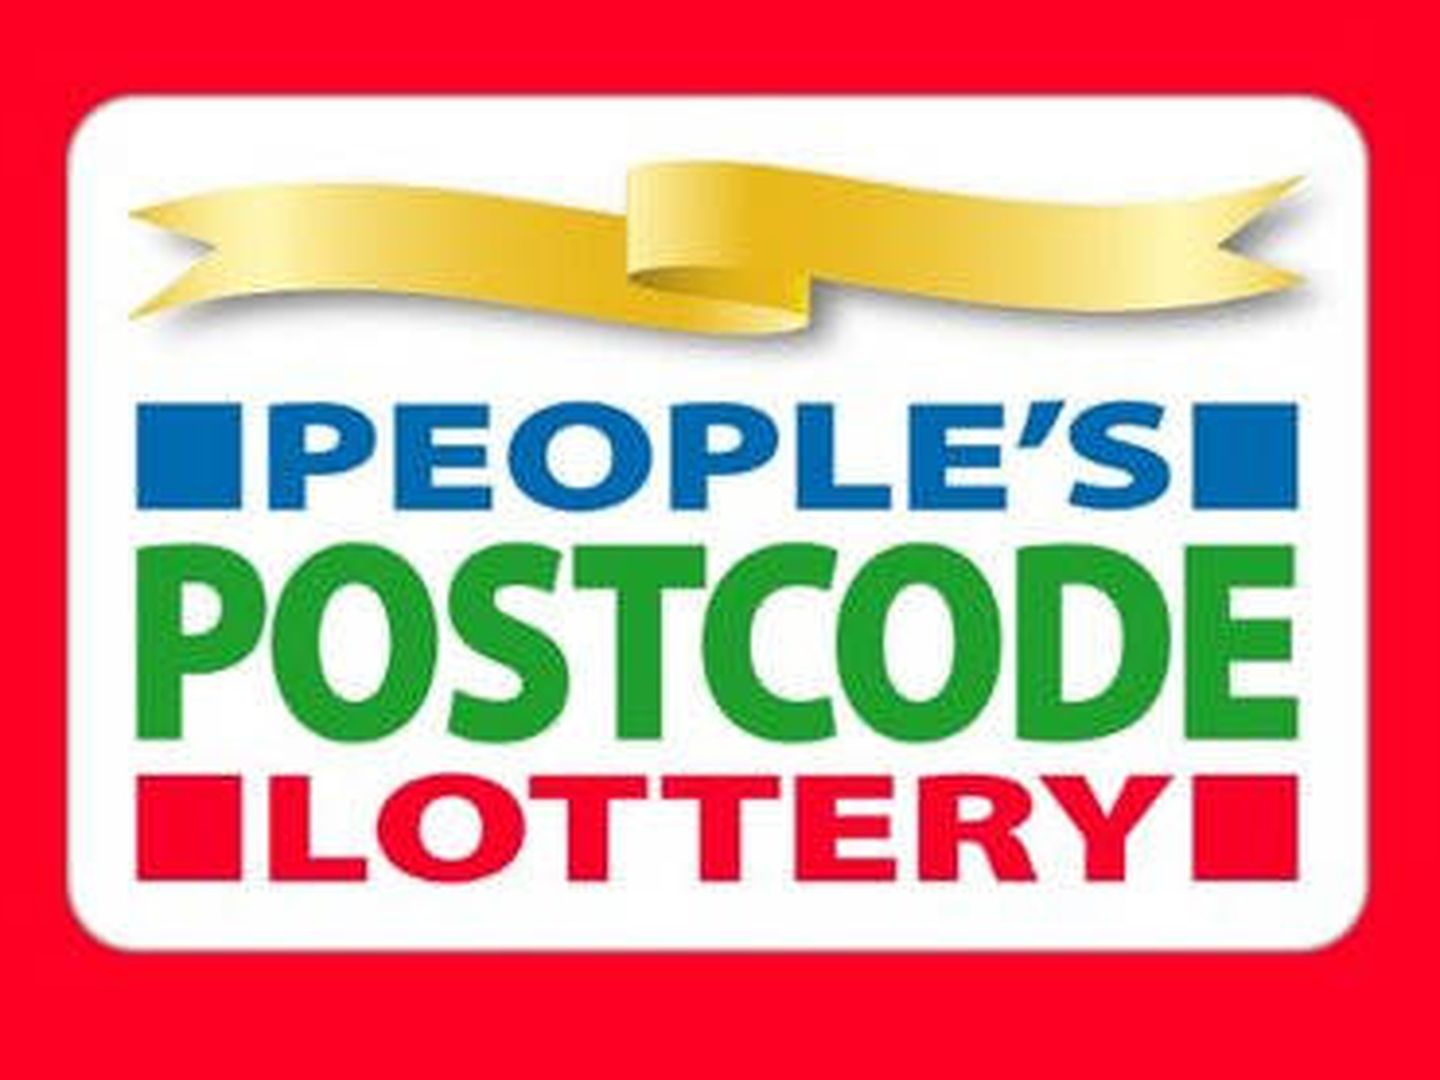 Eric ganó su premio en la lotería de los códigos postales británica